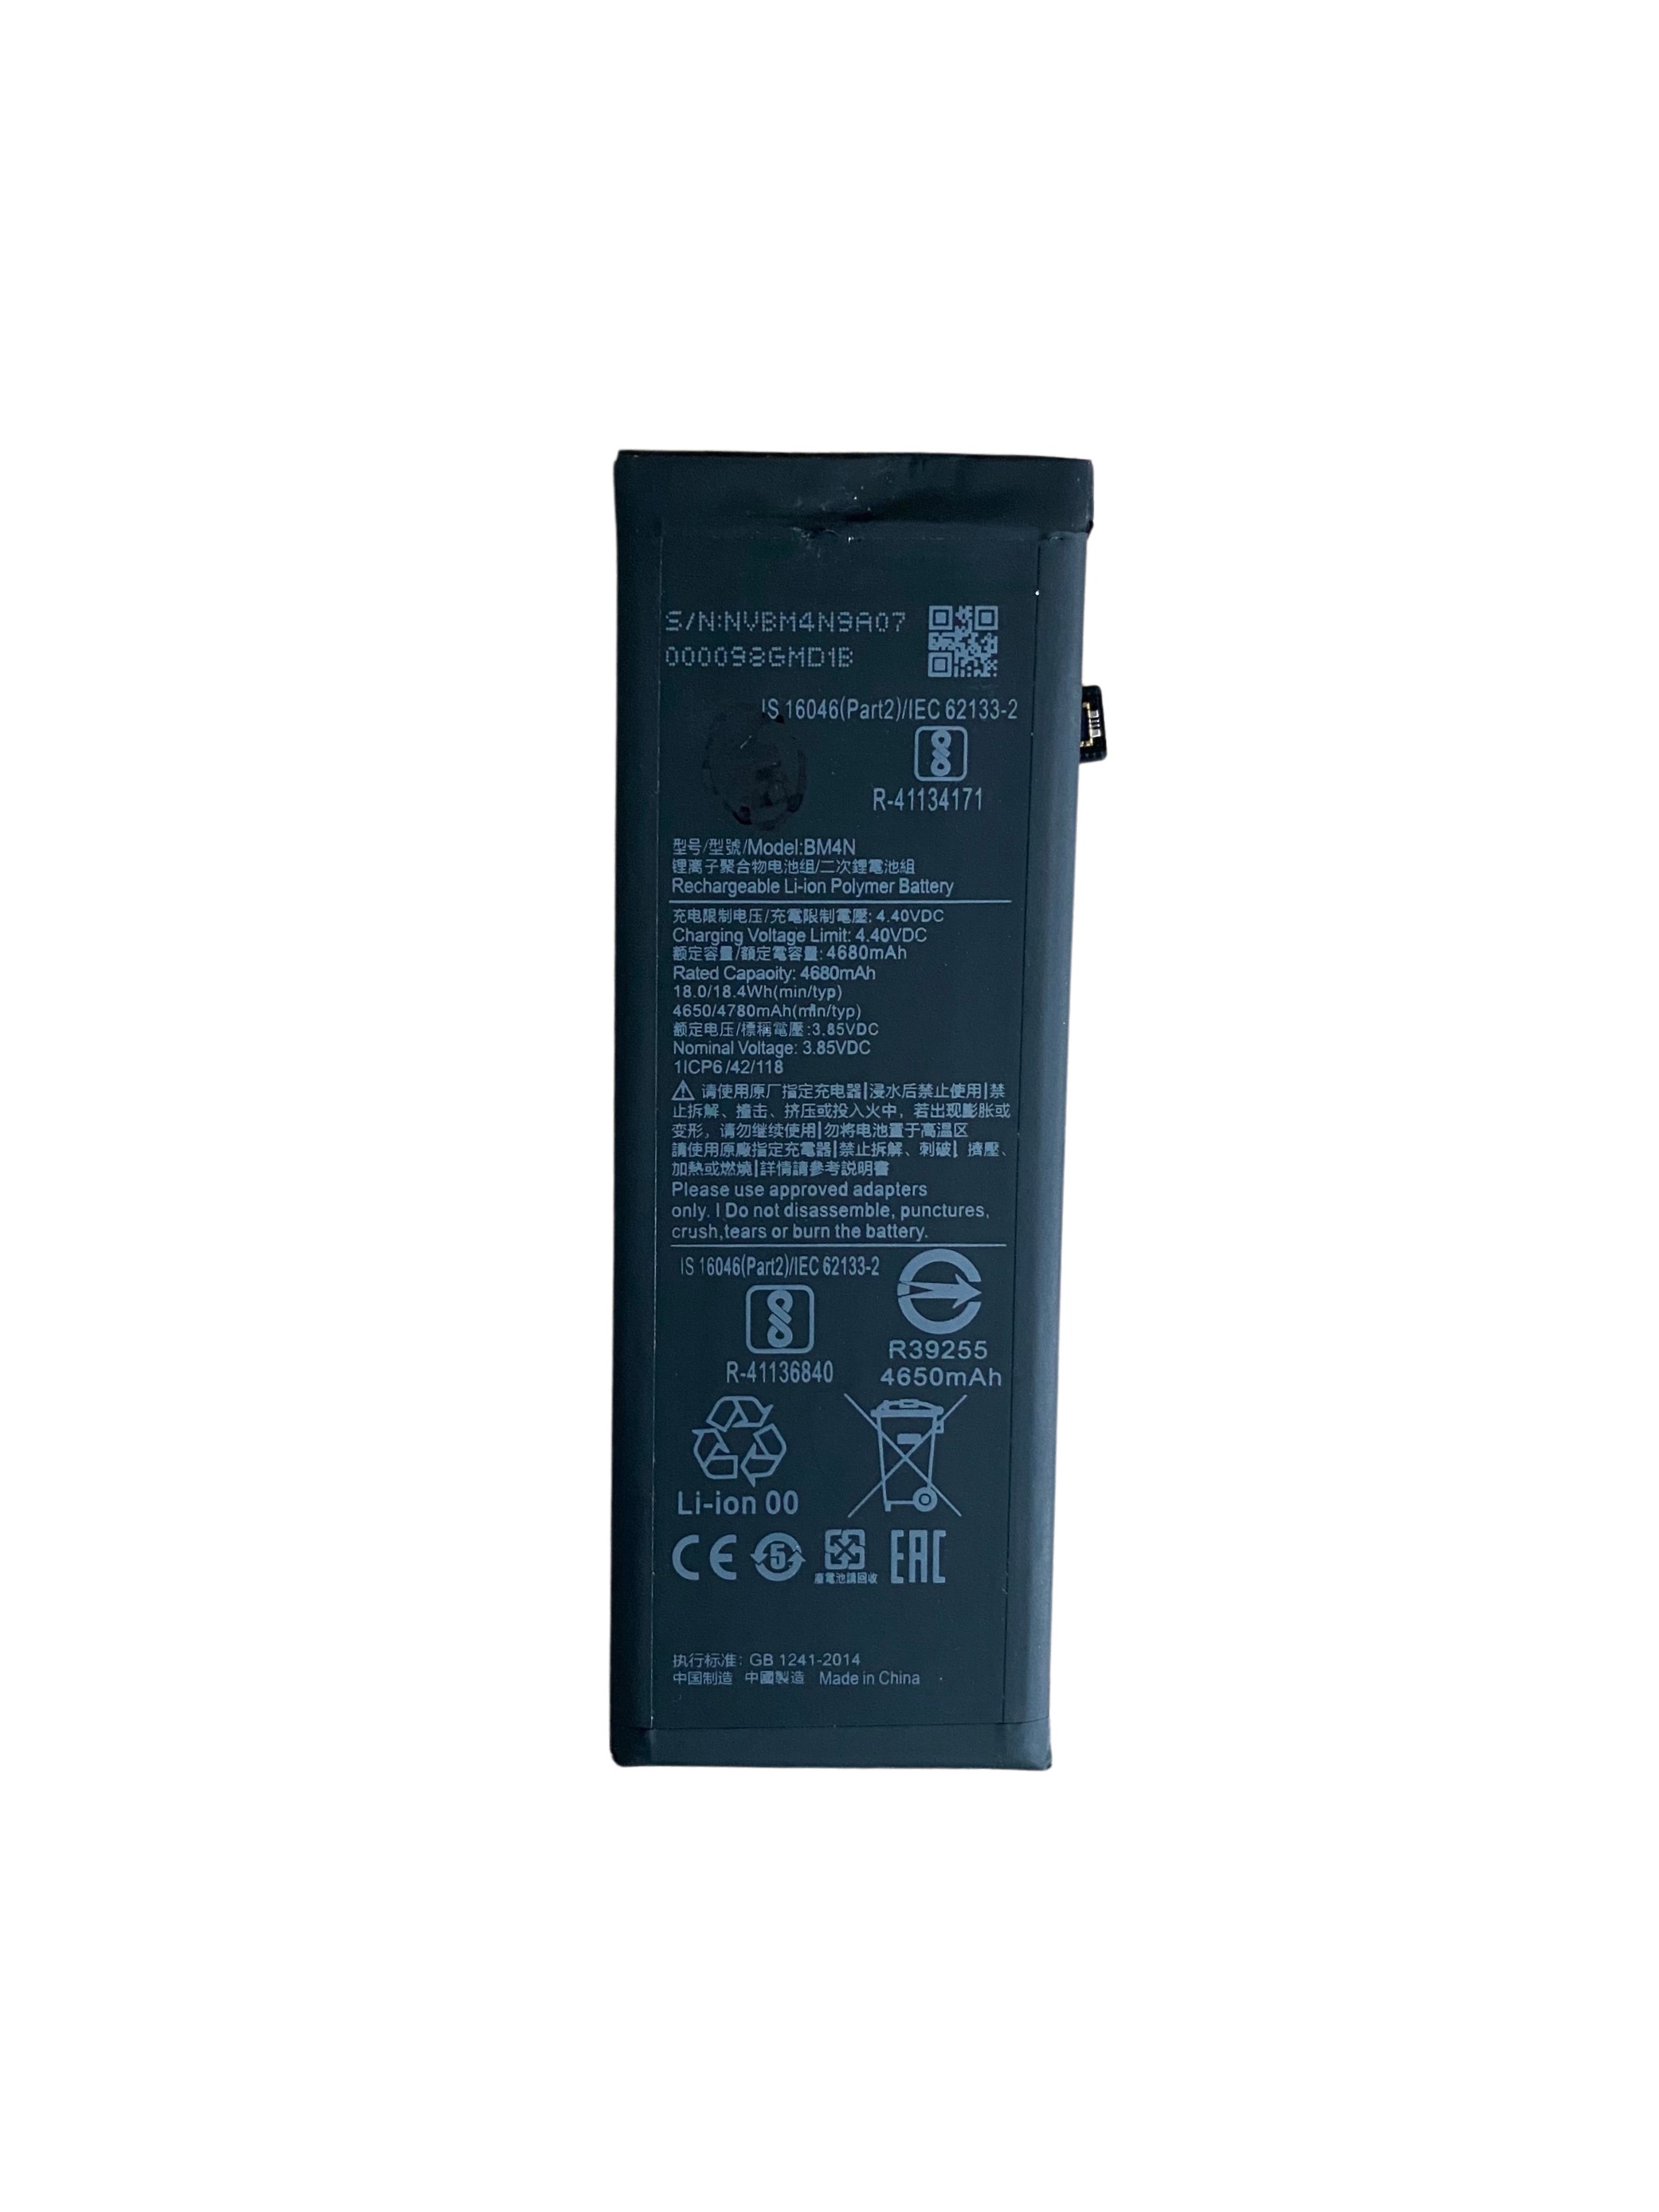 Batteria Agli Ioni Di Litio Xiaomi Bm4N Per Xiaomi Mi 10 5G Compatibile